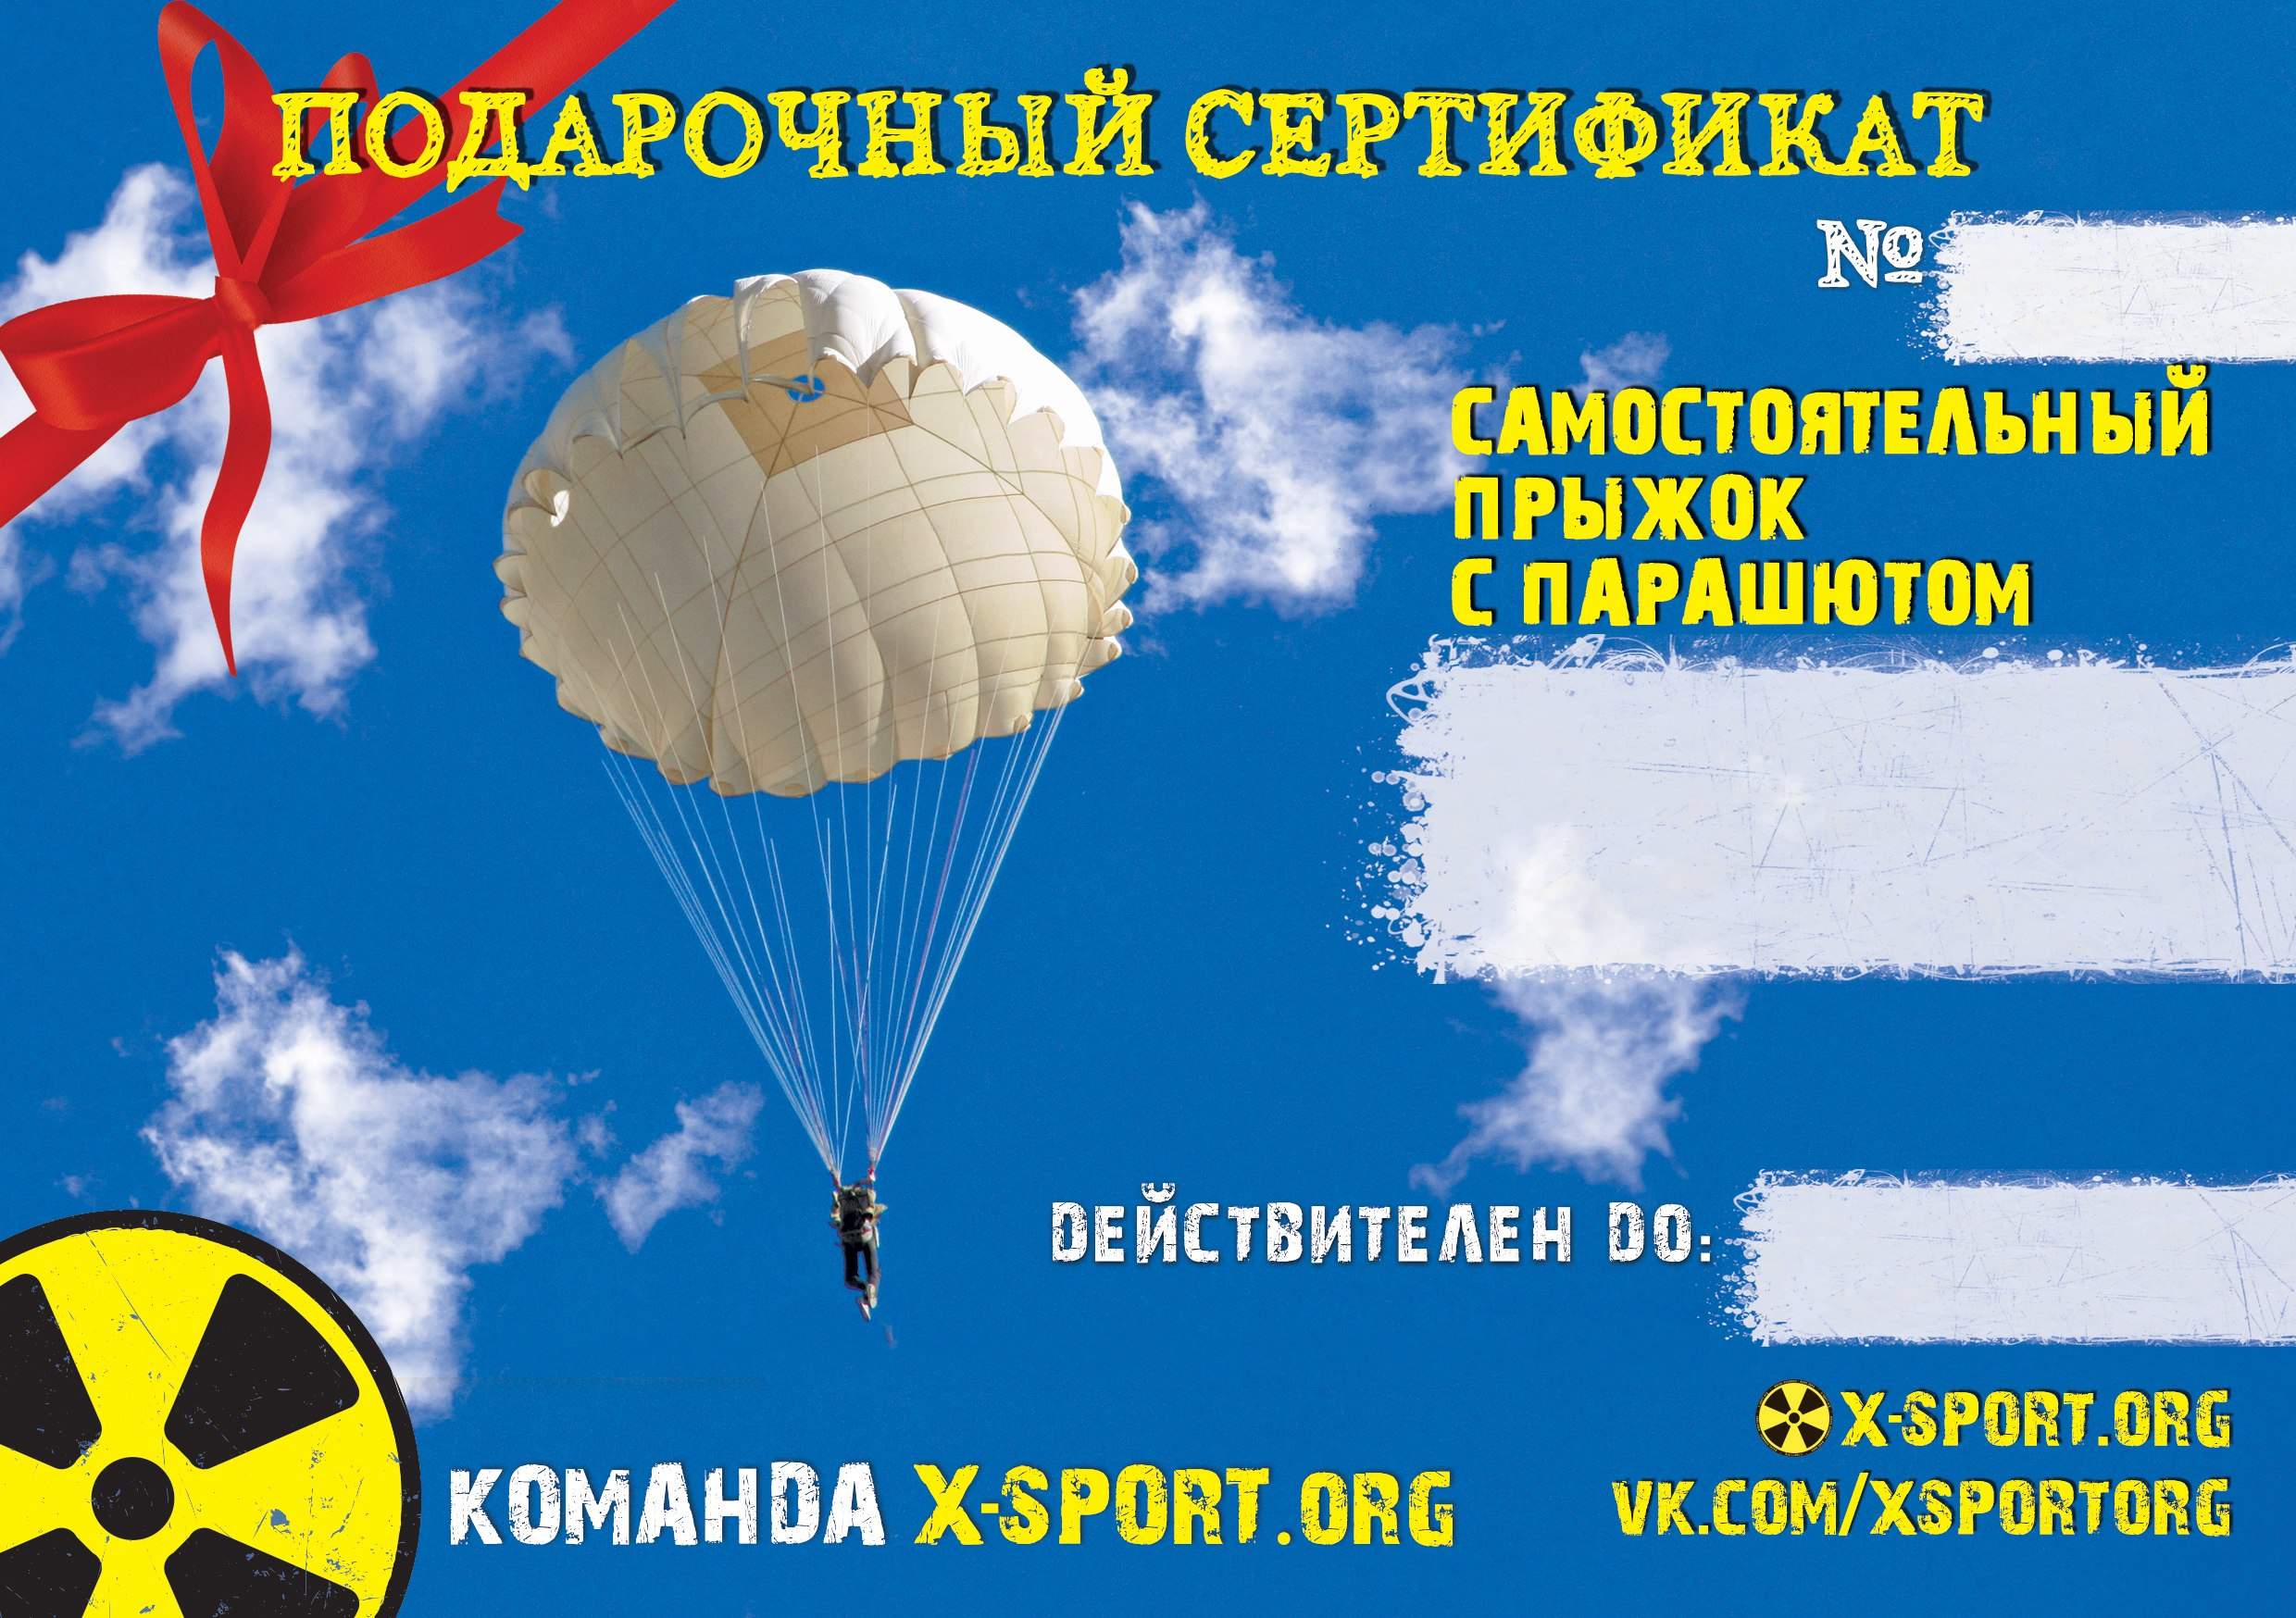 Шуточный сертификат на прыжок с парашютом